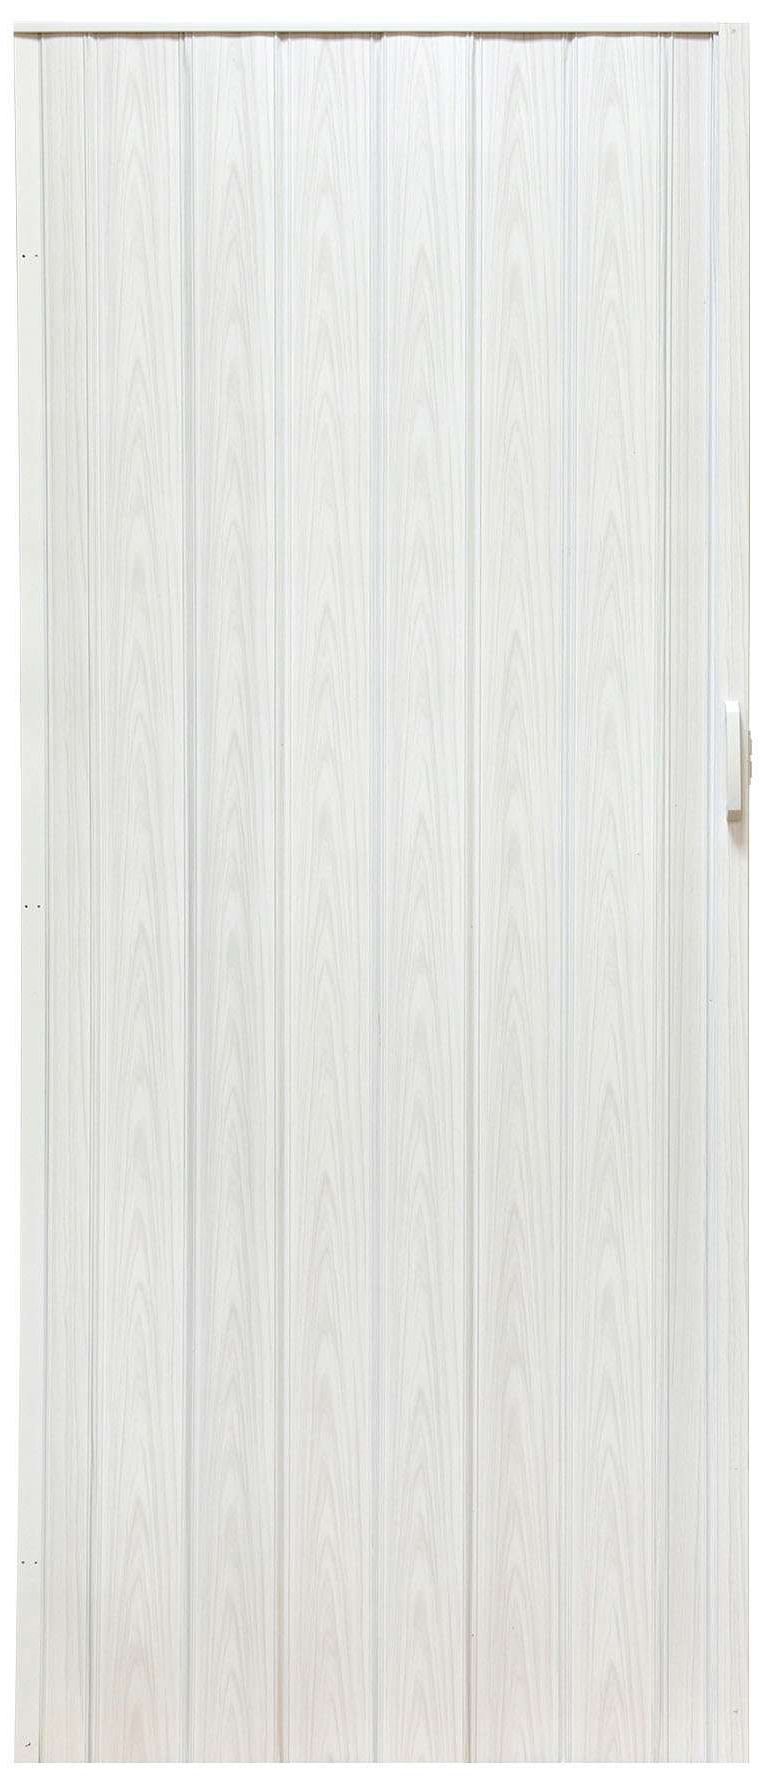 Drzwi harmonijkowe 004-100-04 biały dąb 100 cm